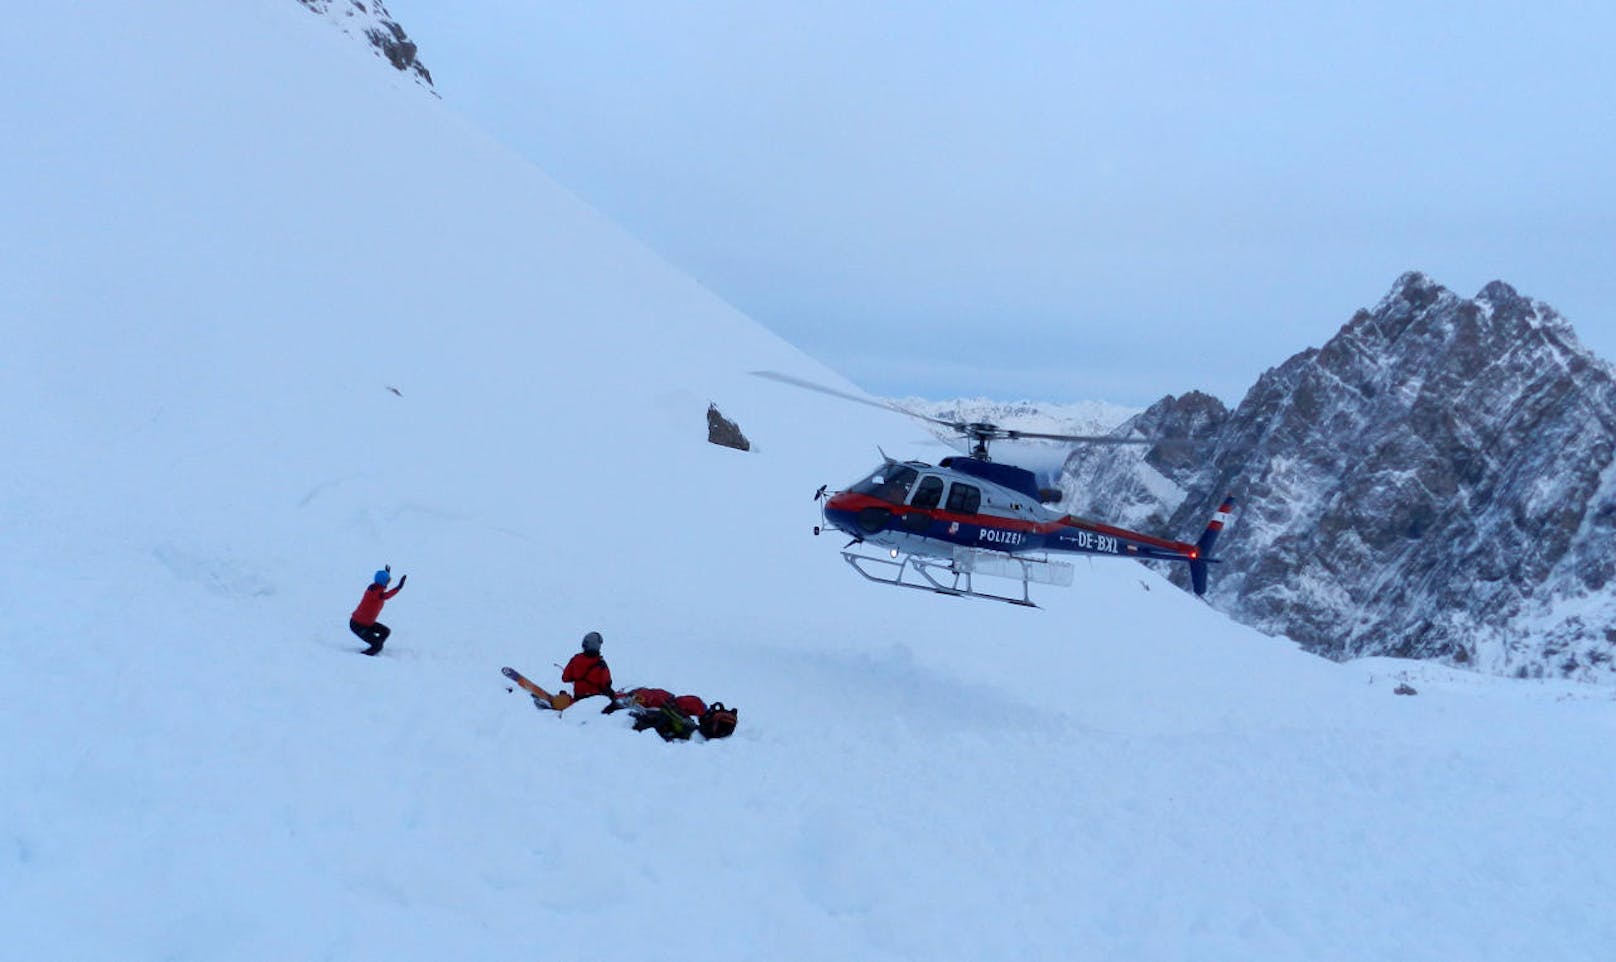 Für einen der beiden Skitourengeher, einen 67-jährigen Osttiroler, kam jede Hilfe zu spät.